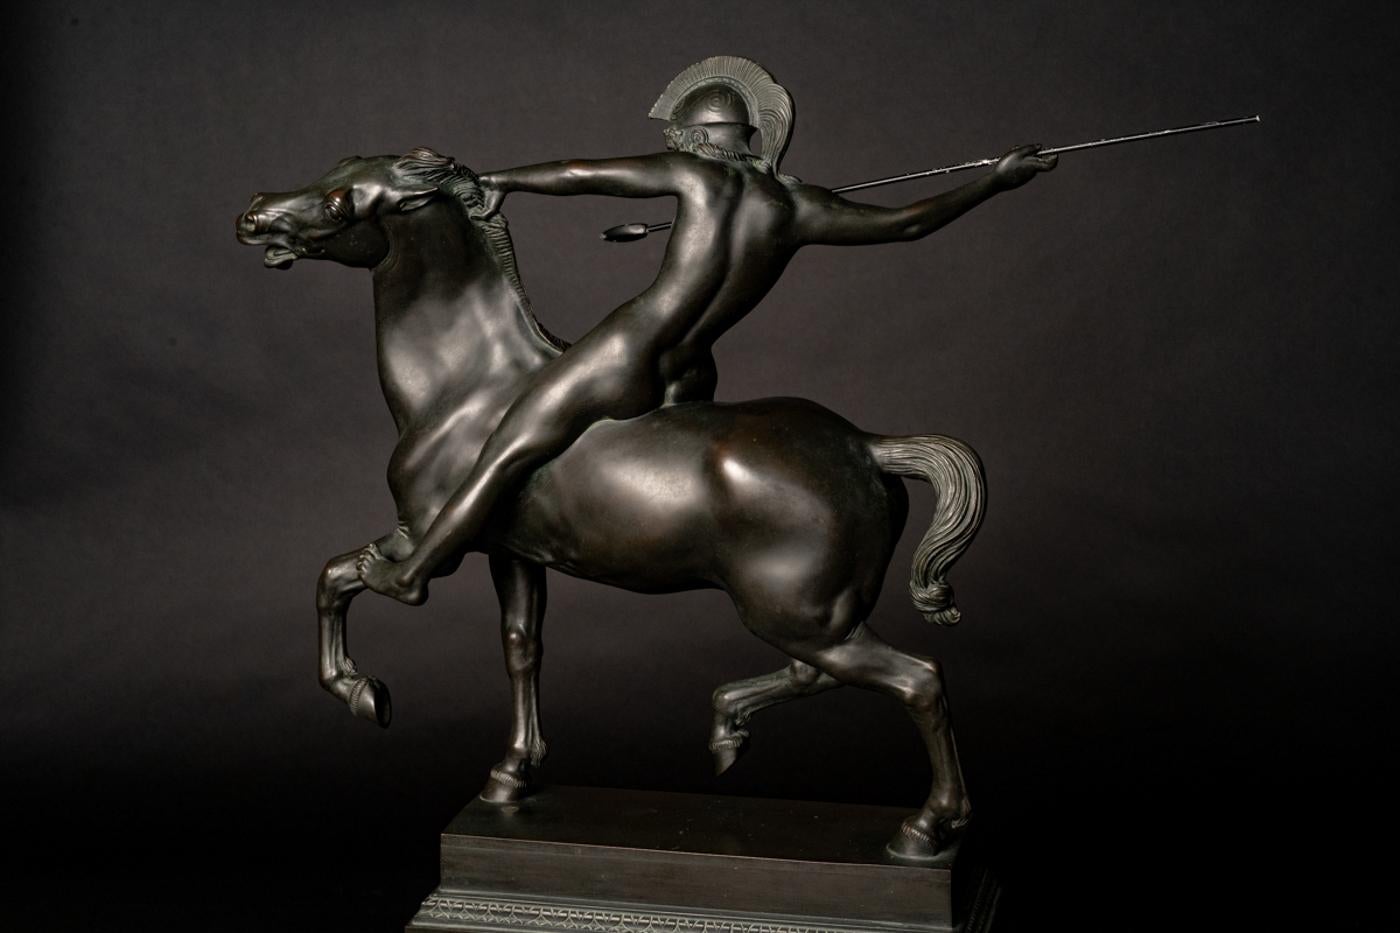 Mounted Amazon - Jugendstil Sculpture by Franz von Stuck